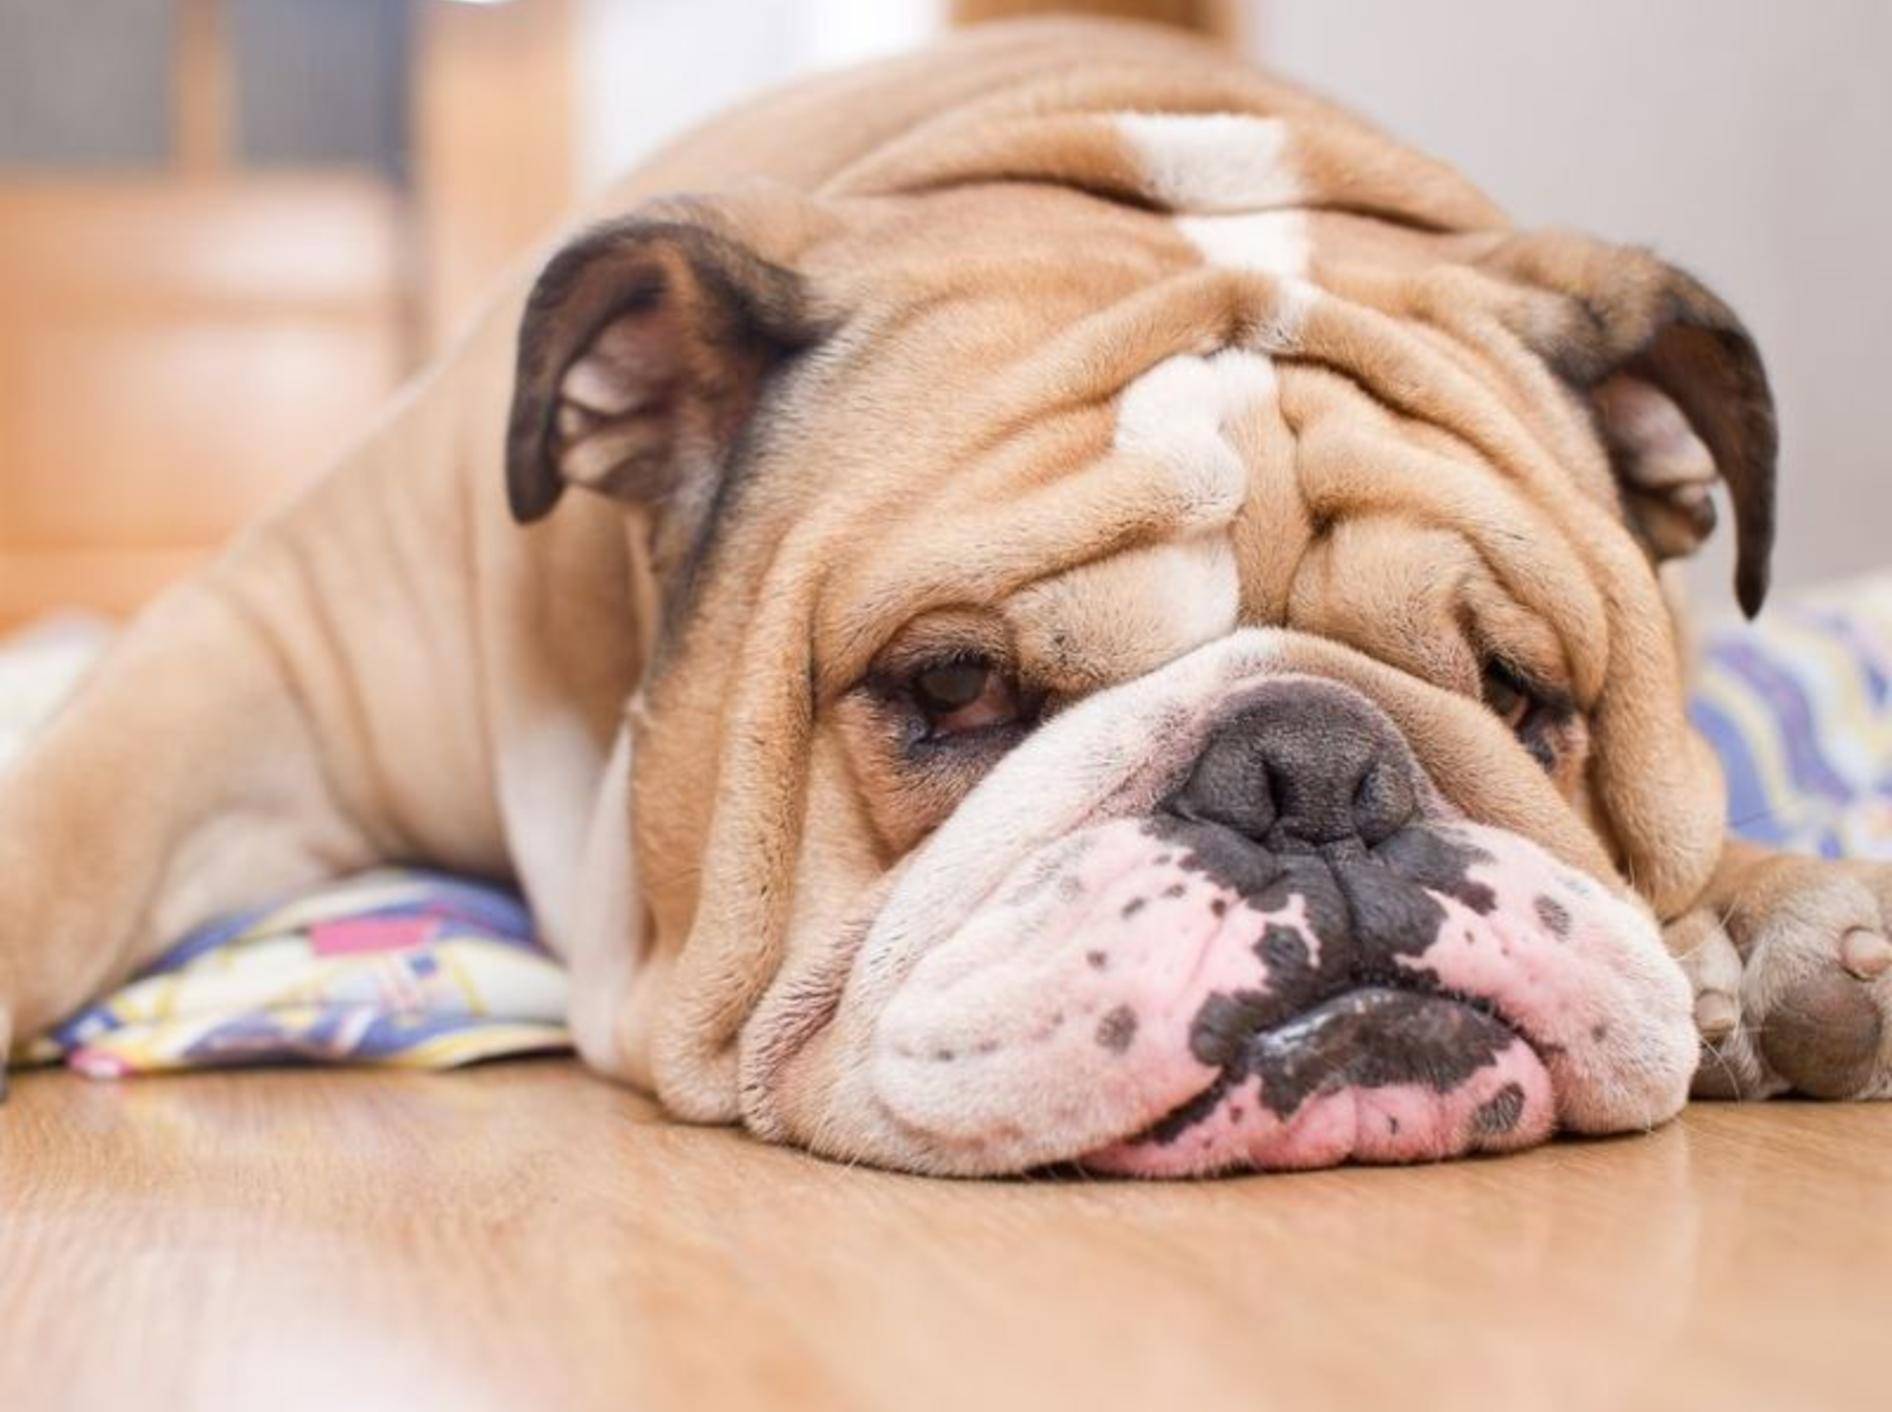 Englische Bulldoggen neigen zu Übergewicht und leiden stark unter den Folgen – Bild: Shutterstock / Katsai Tatiana